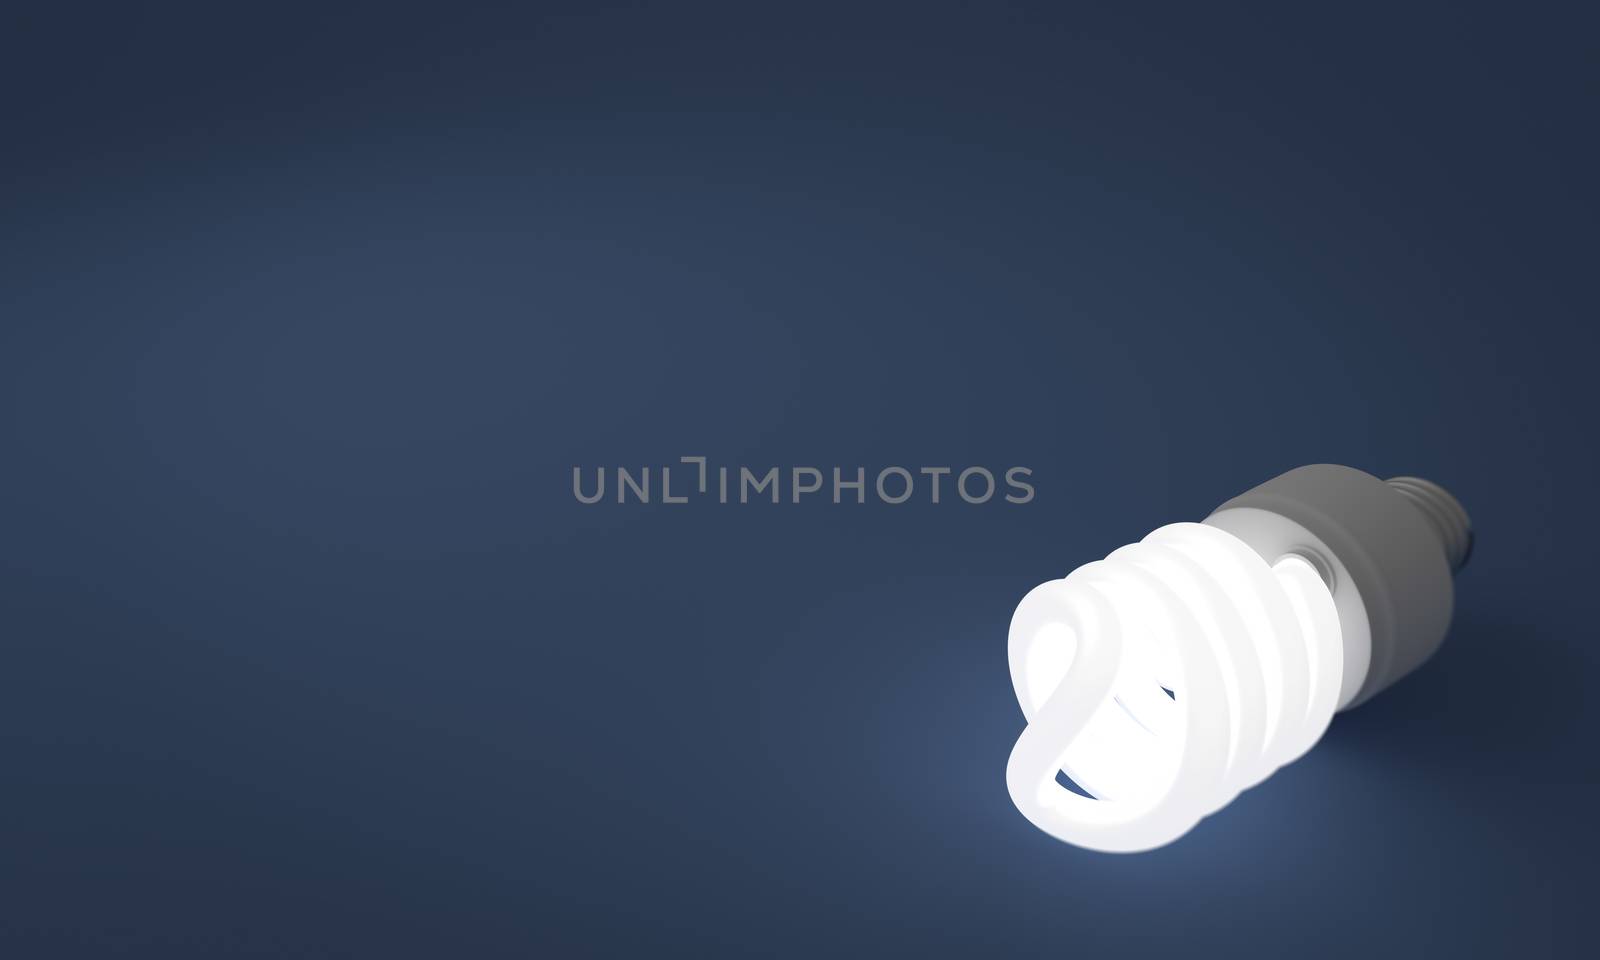 Lit Fluorescent Lightbulb by Daniel_Wiedemann